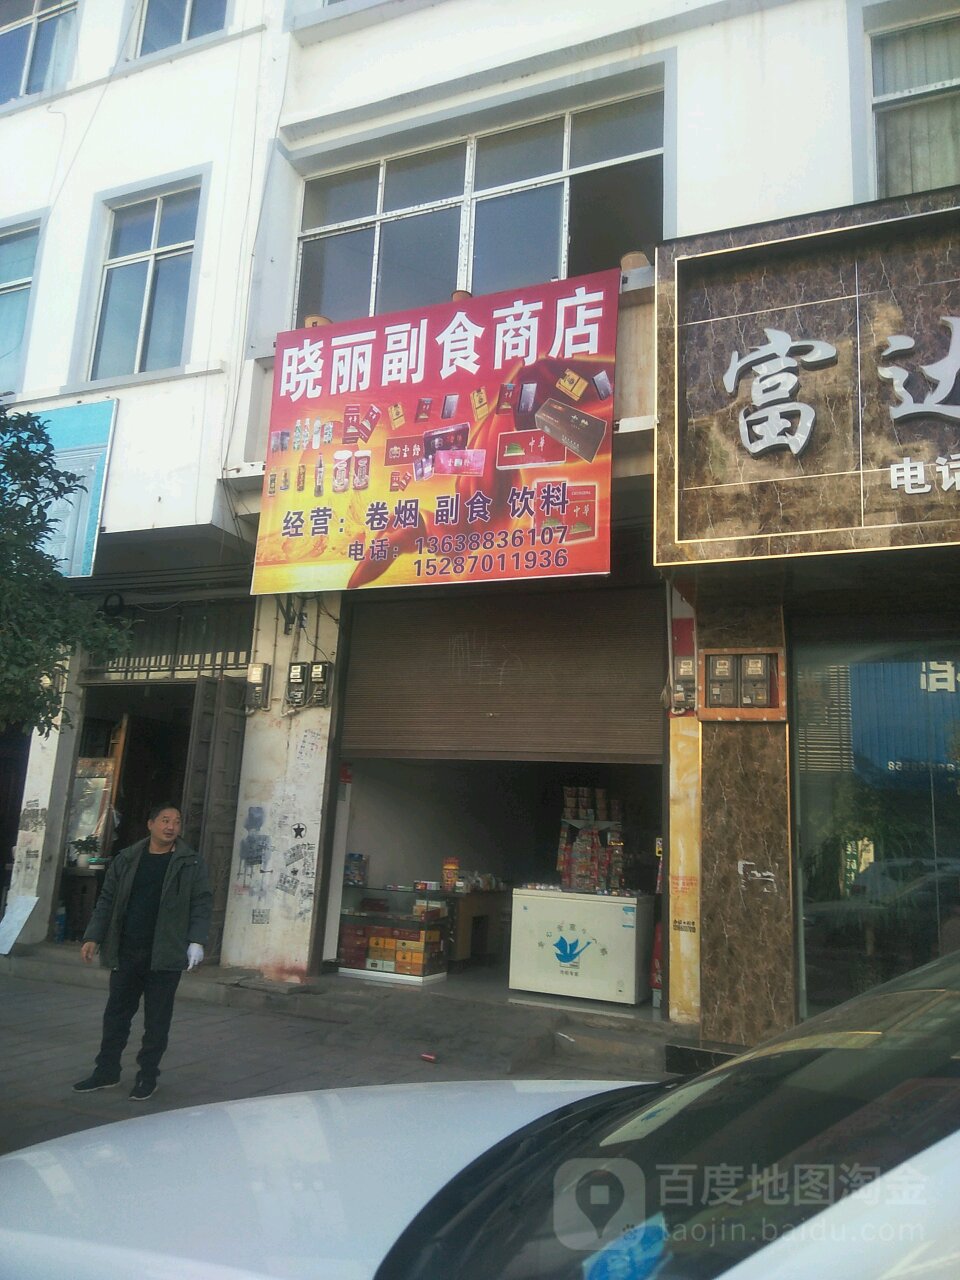 曉麗副食商店